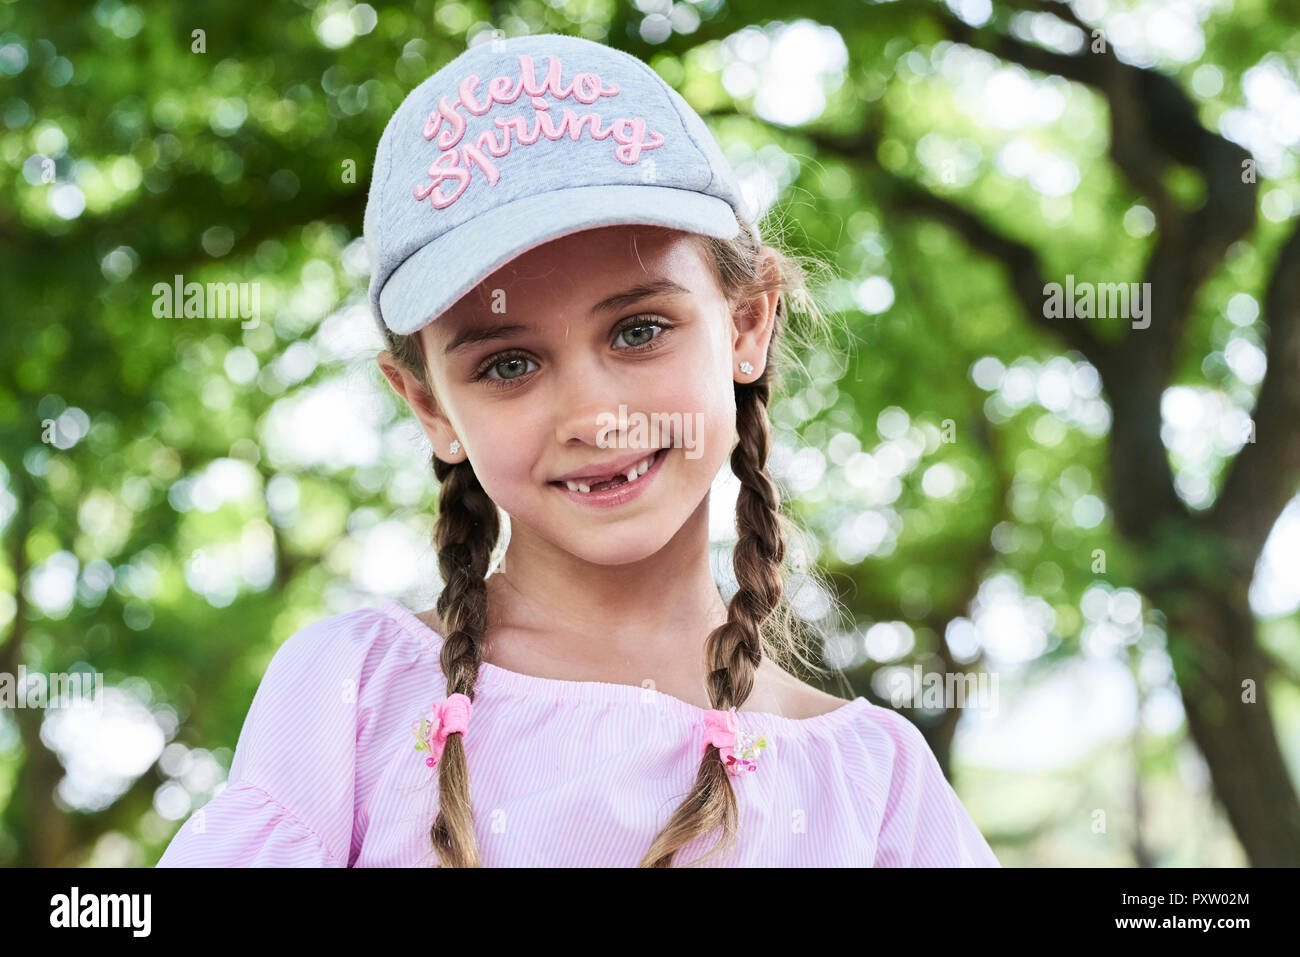 Portrait von kleinen Mädchen mit grünen Augen Zöpfe und Kappe, lächelnd Stockfoto